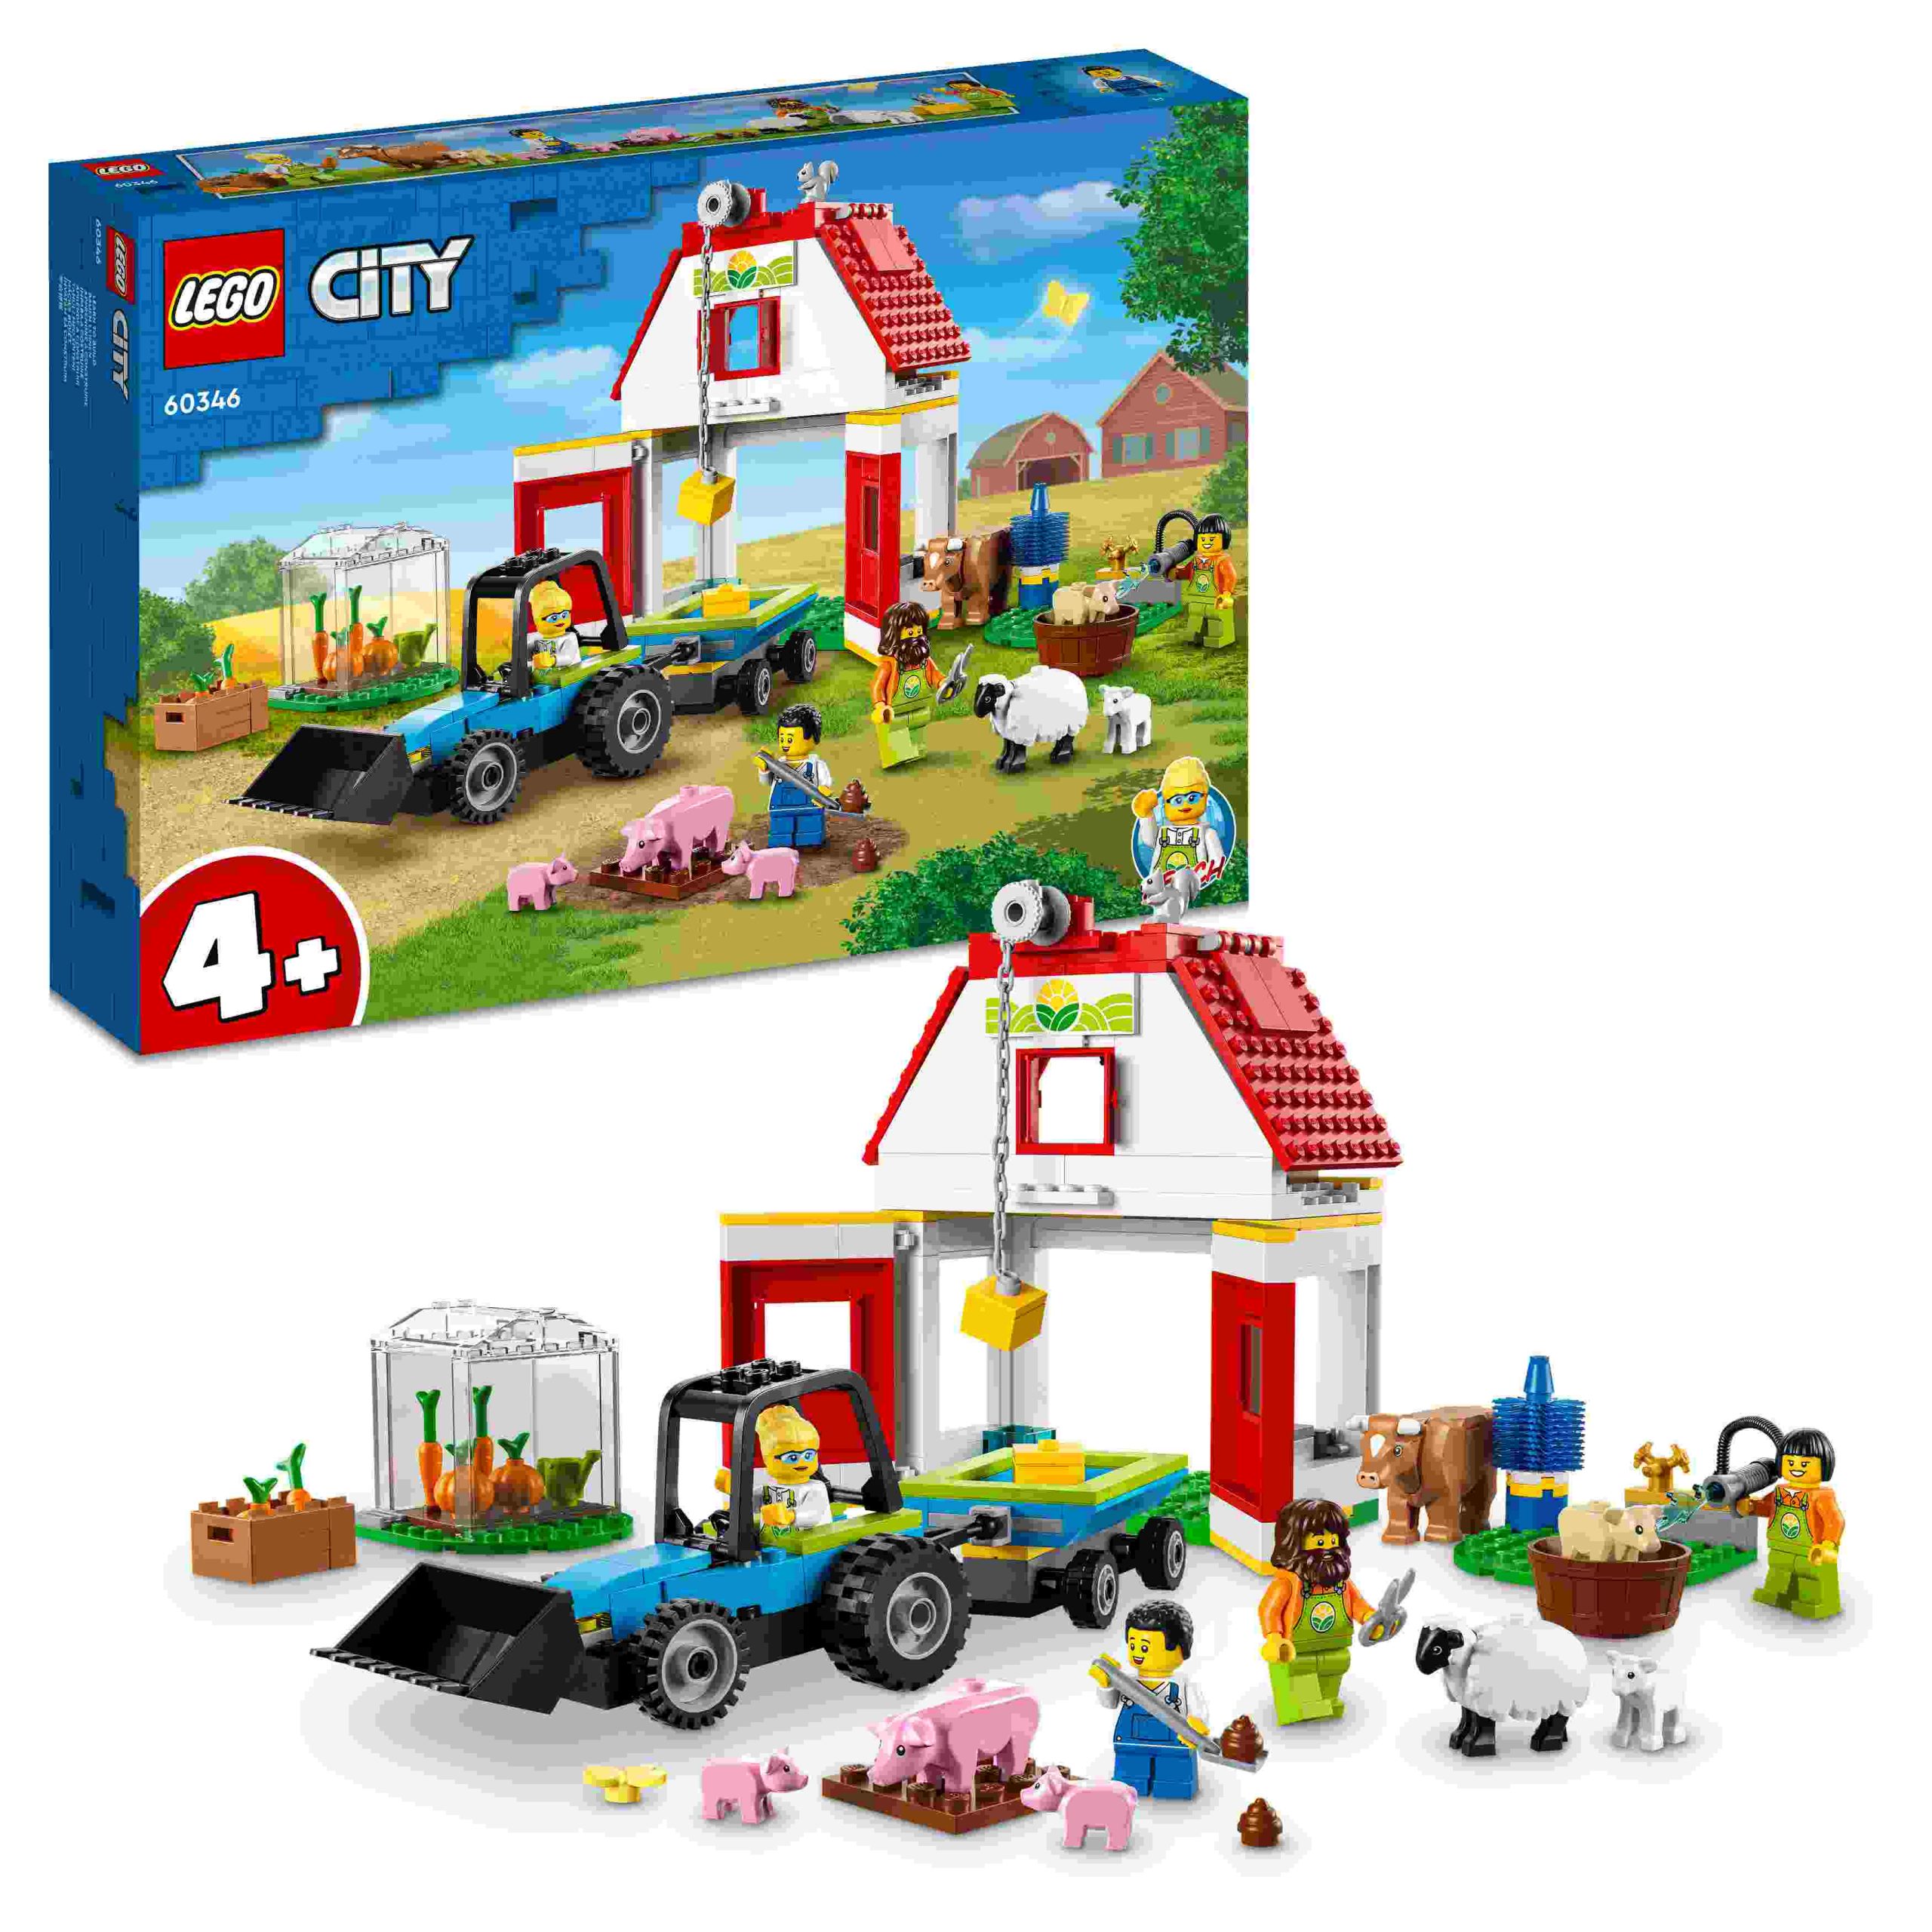 Lego city 60346 il fienile e animali da fattoria, idea regalo con trattore  giocattolo, giochi per bambini dai 4 anni in su - Toys Center